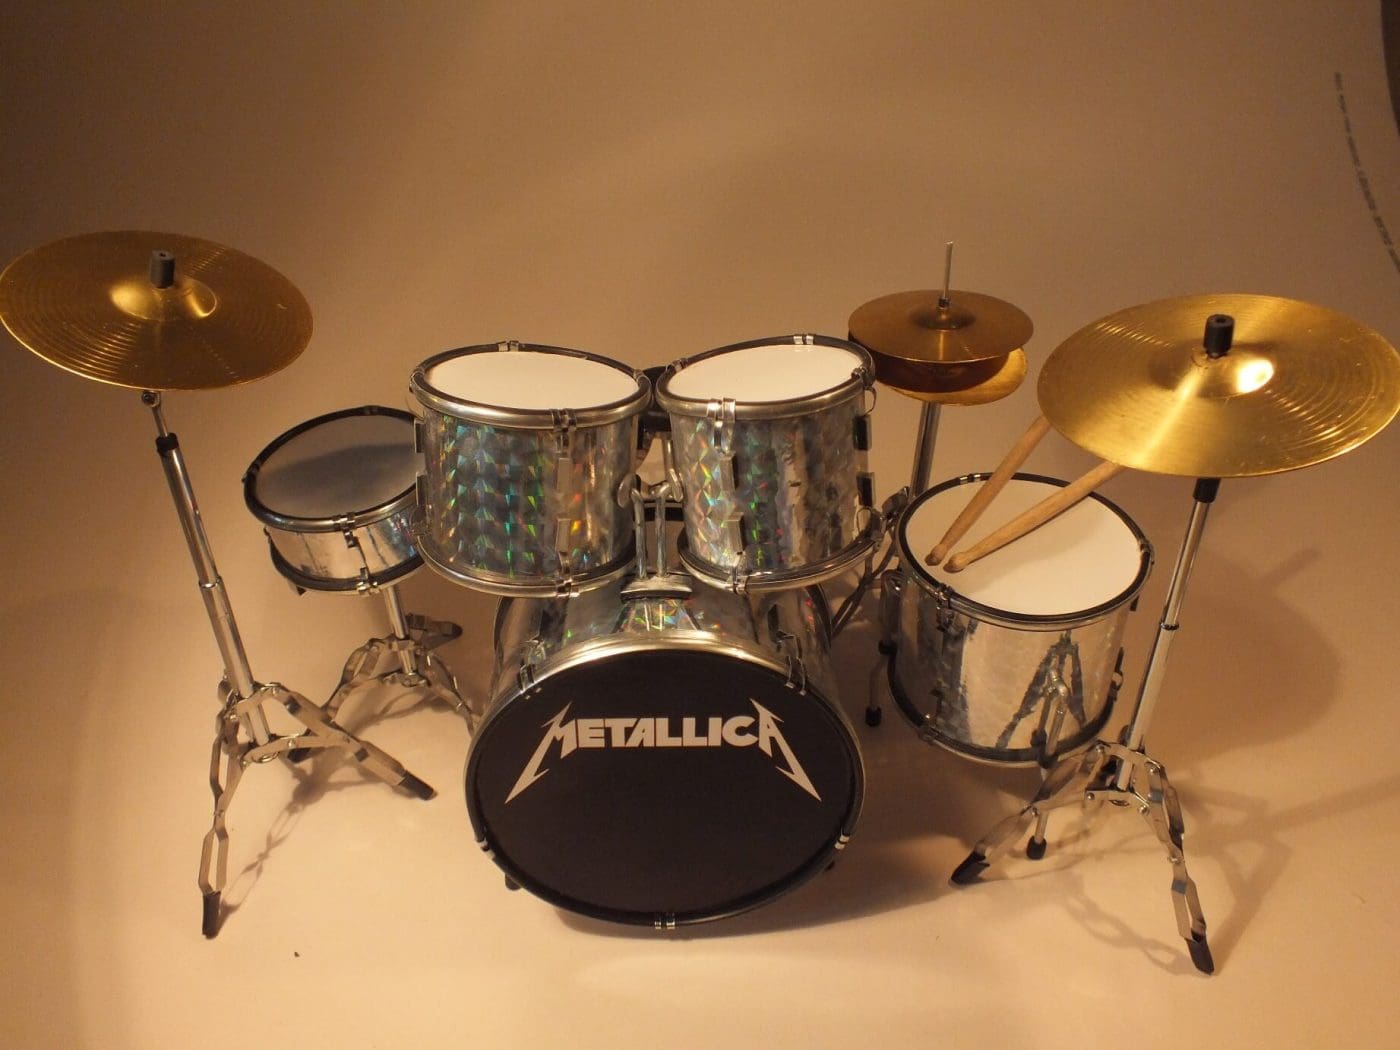 METALLICA miniature drum set Mini drum set 